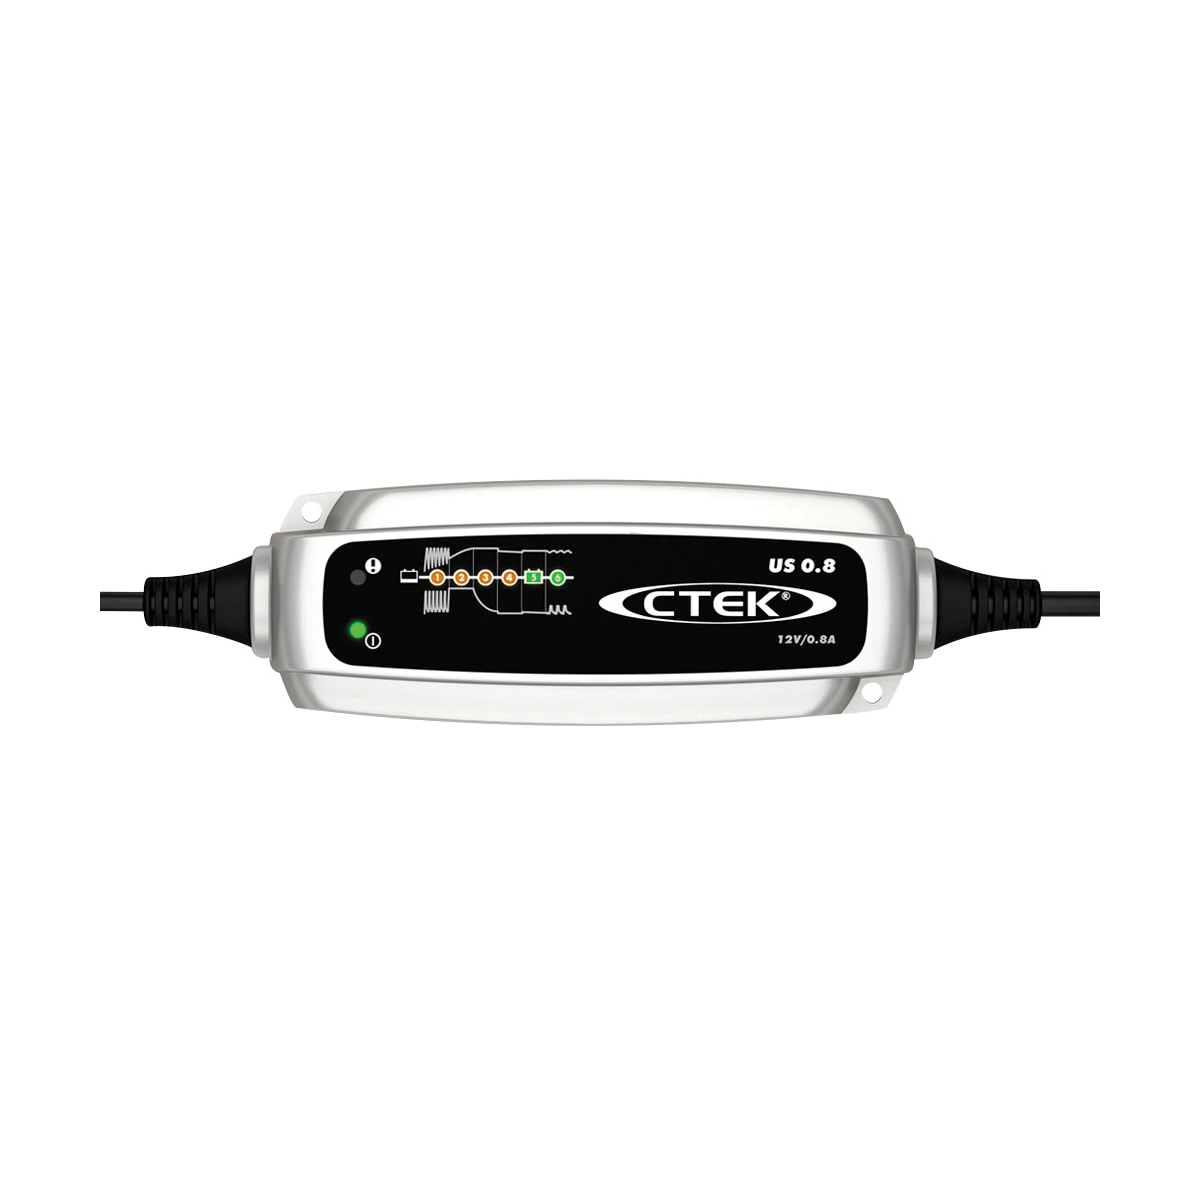 CTEK 56-865 Battery Charger, 12 V Output, 12 V Battery, 0.8 A Charge - 1